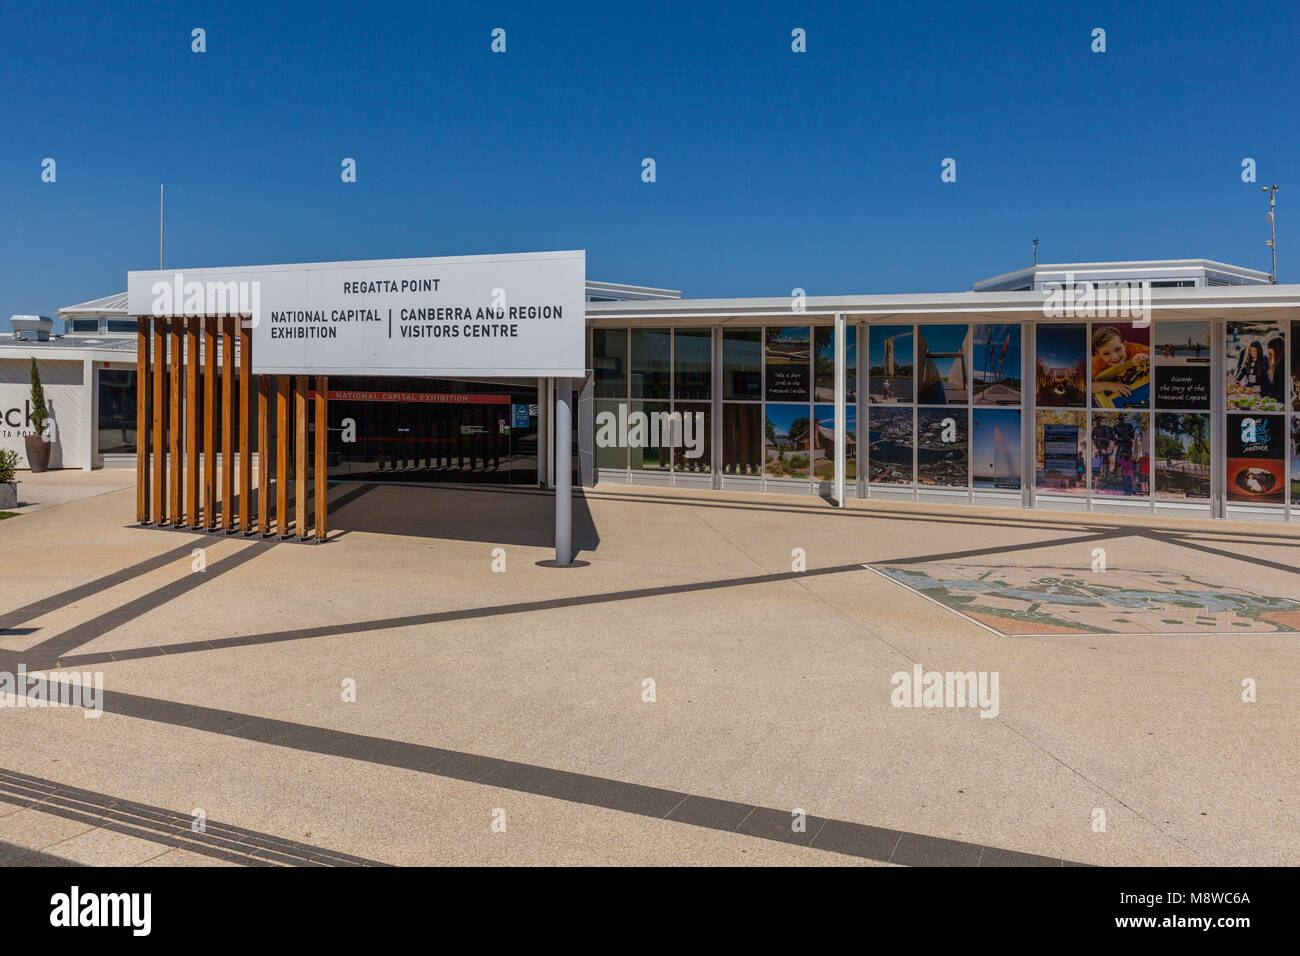 Canberra, Australien - 11. März 2018: Canberra und Region Besucherzentrum in Canberra, Australien Stockfoto